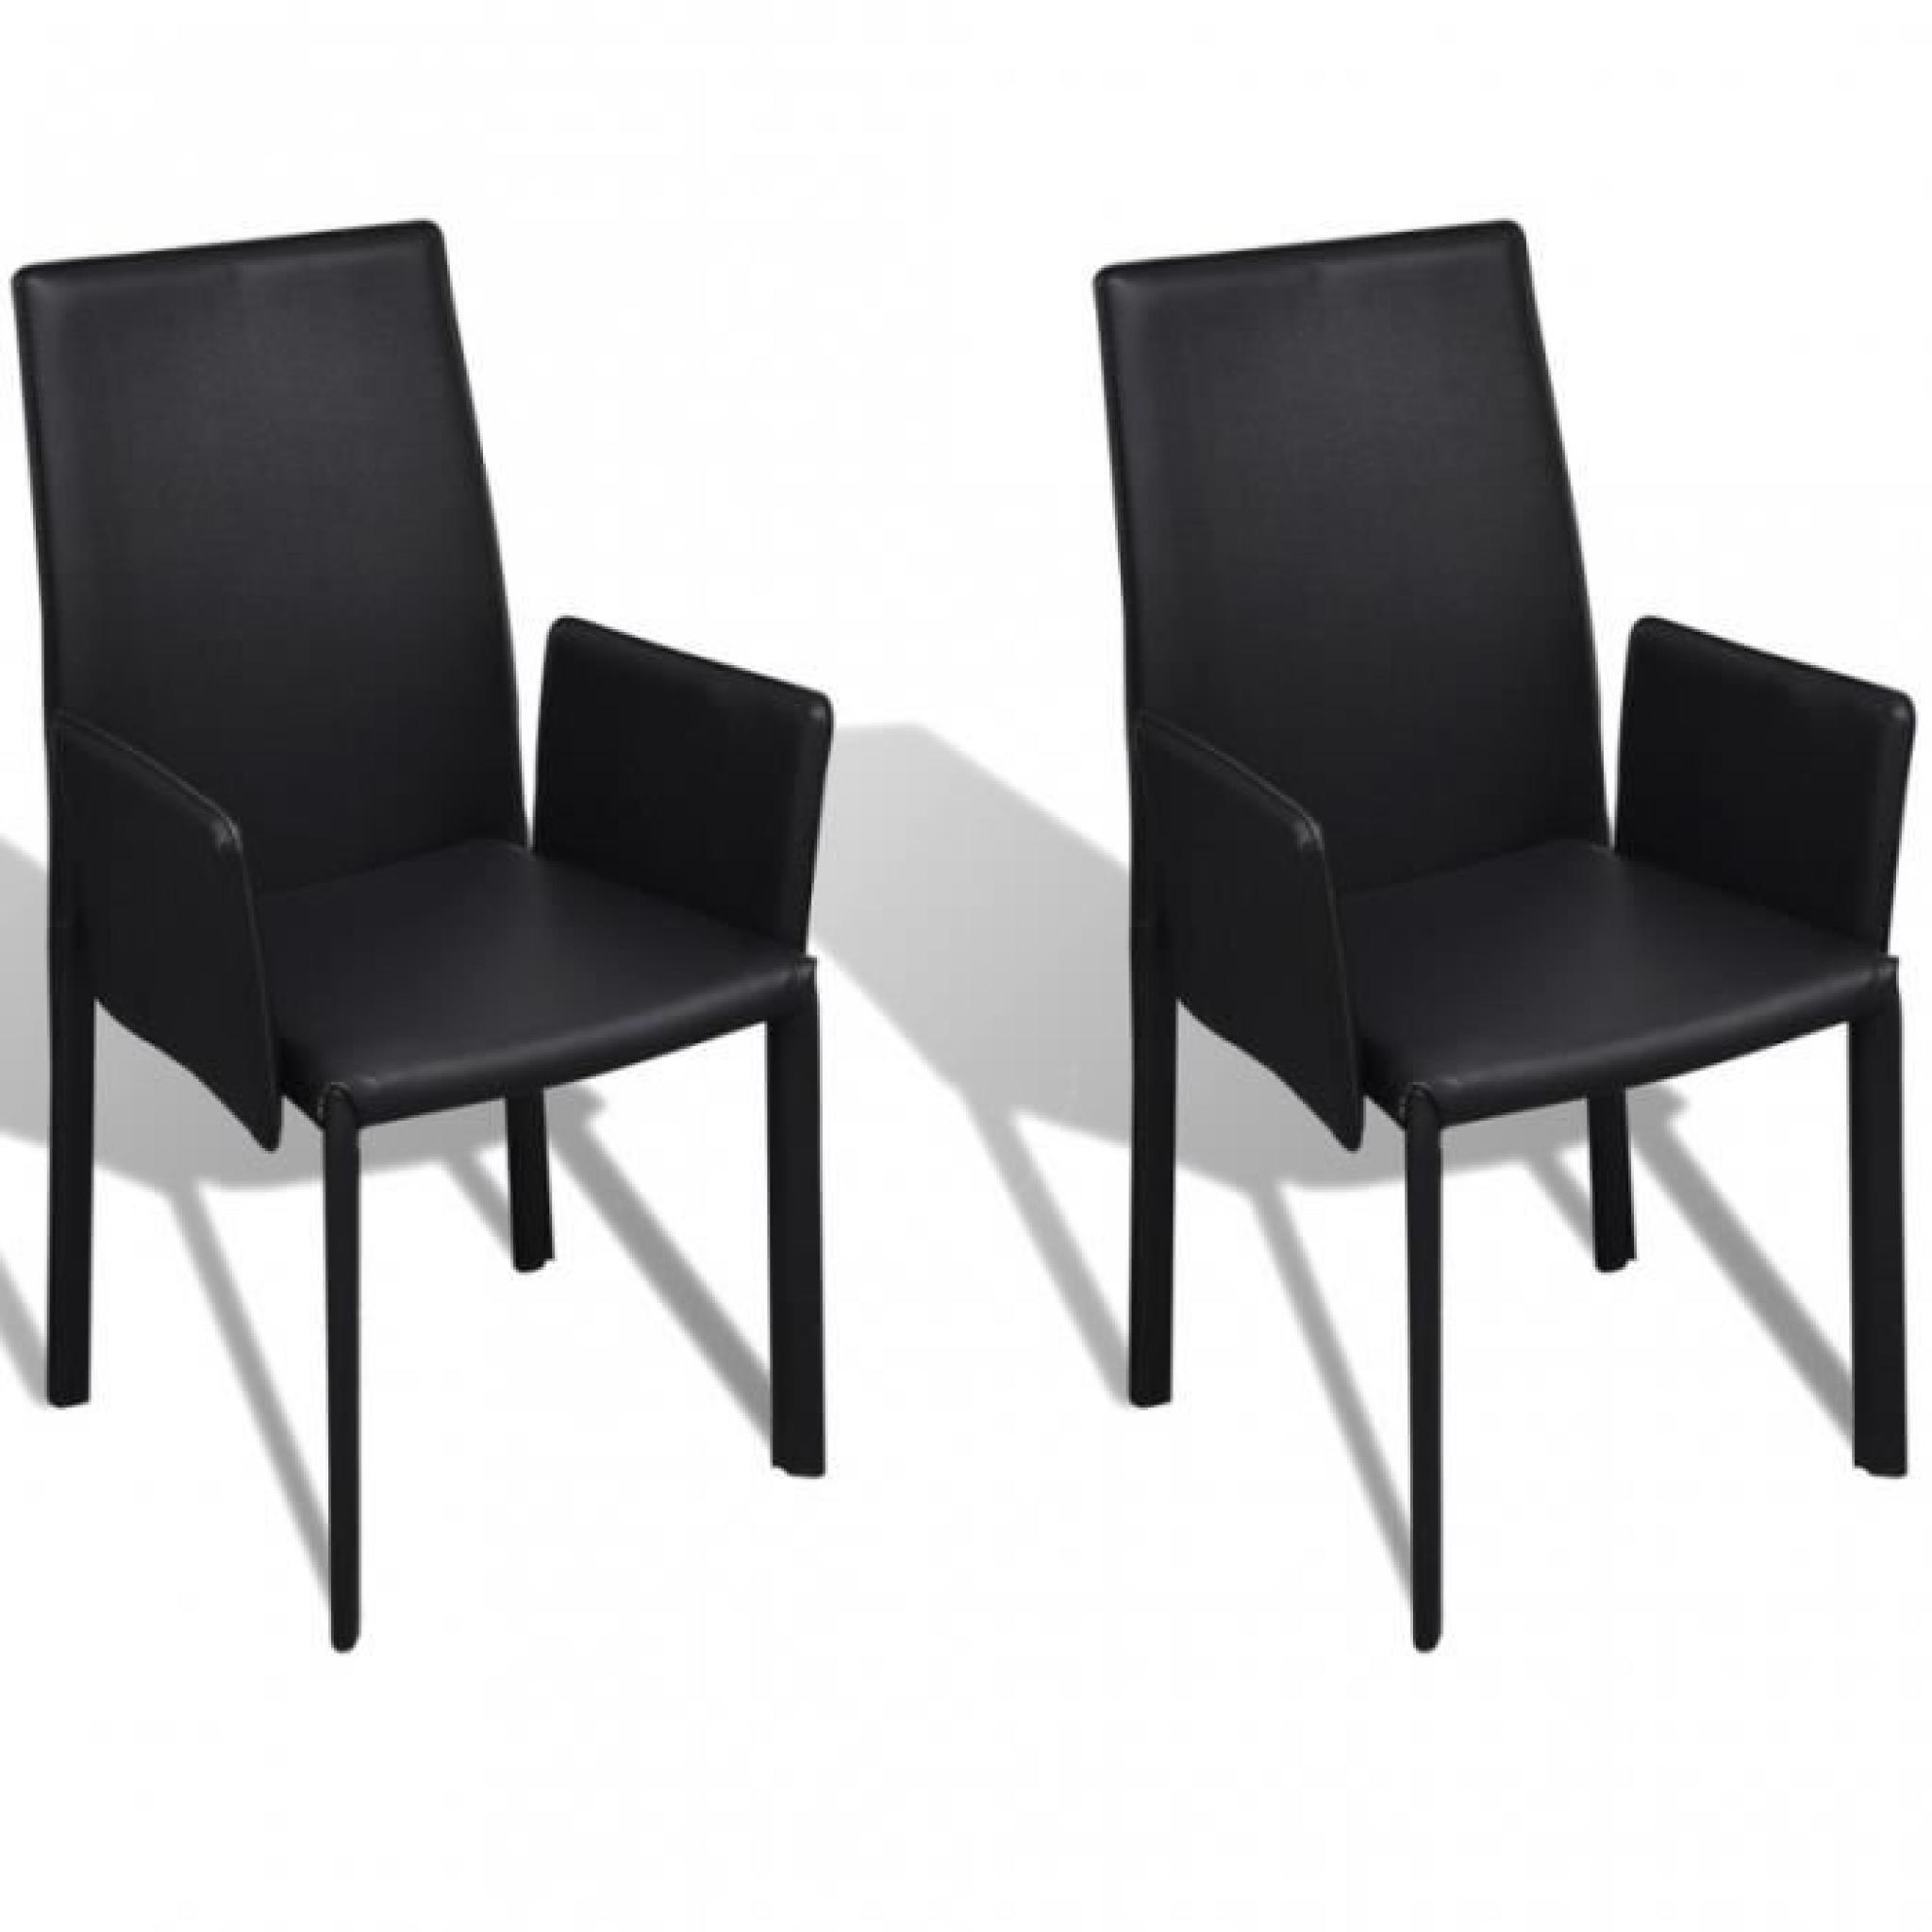 Cet ensemble de chaise en PU est non seulement esthétique, mais aussi ergonomique, pour ajouter une touche de confort ainsi que l...